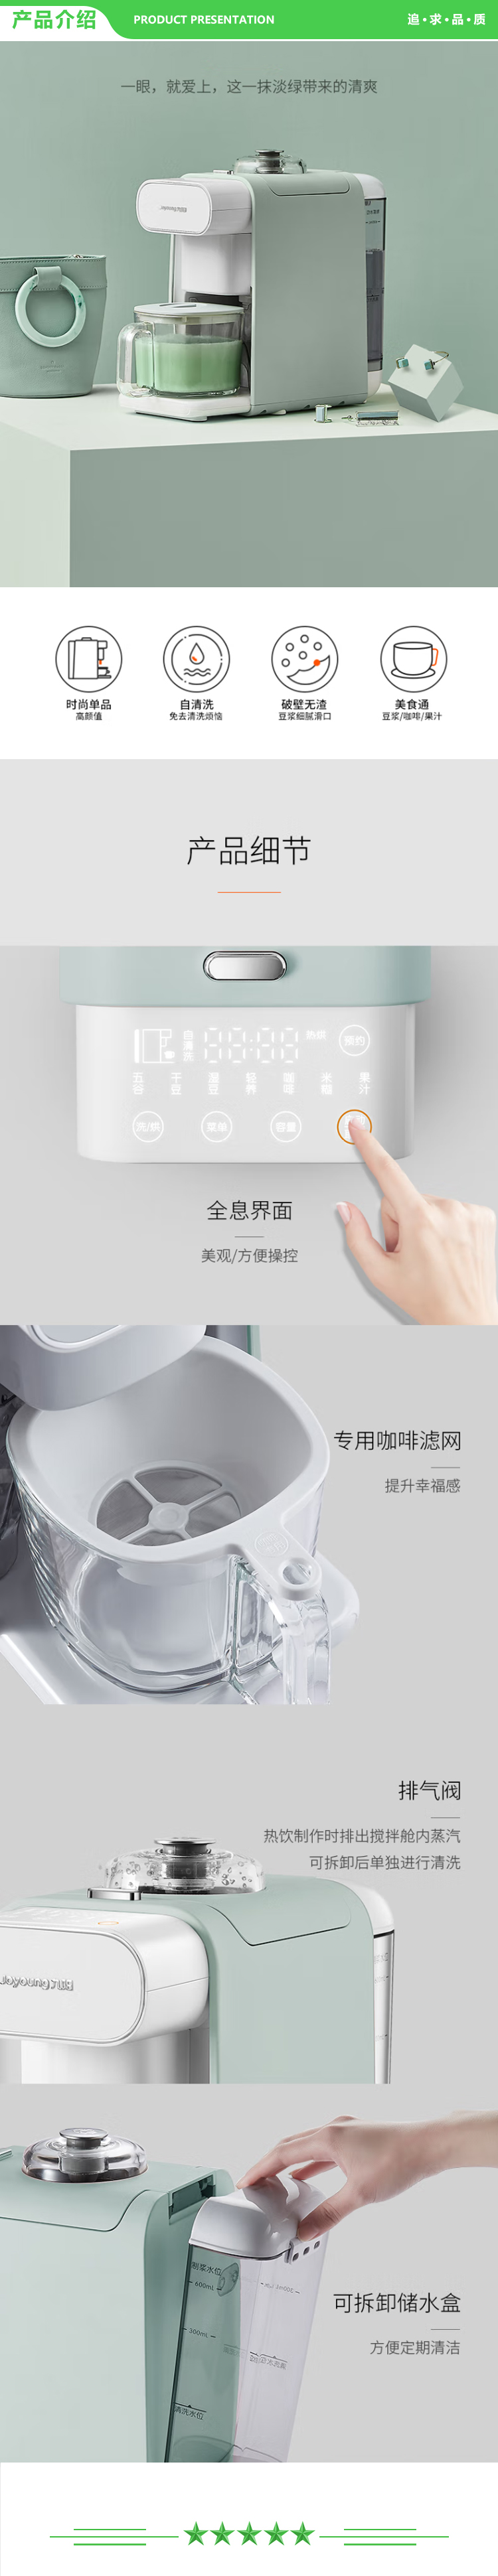 九阳 Joyoung DJ06R-Kmini 免手洗豆浆机 0.6L破壁无渣自动出浆咖啡机青色（天空系列）.jpg